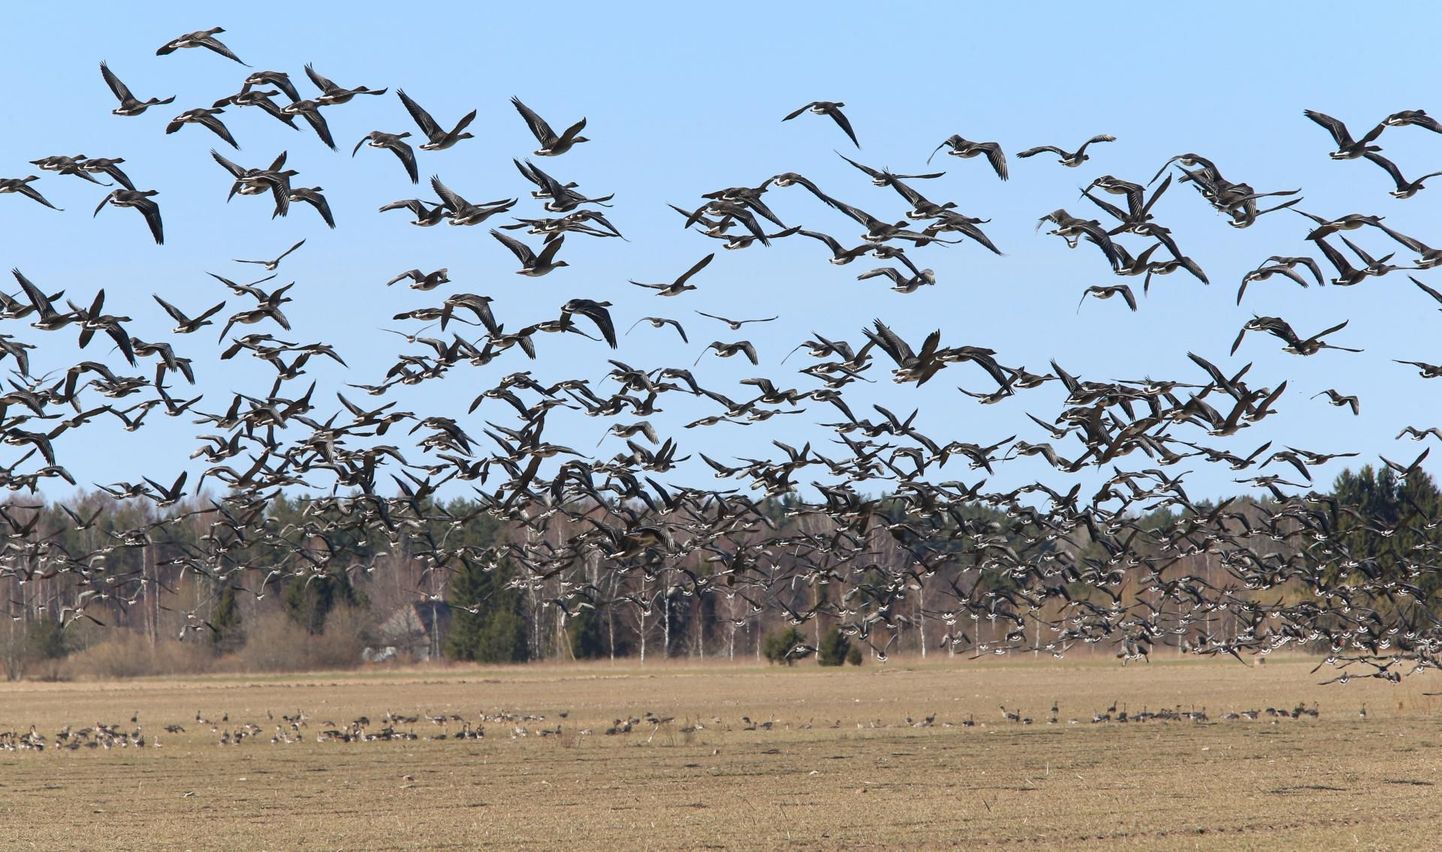 После зимовки в Голландии гуси весной возвращаются в Эстонию.